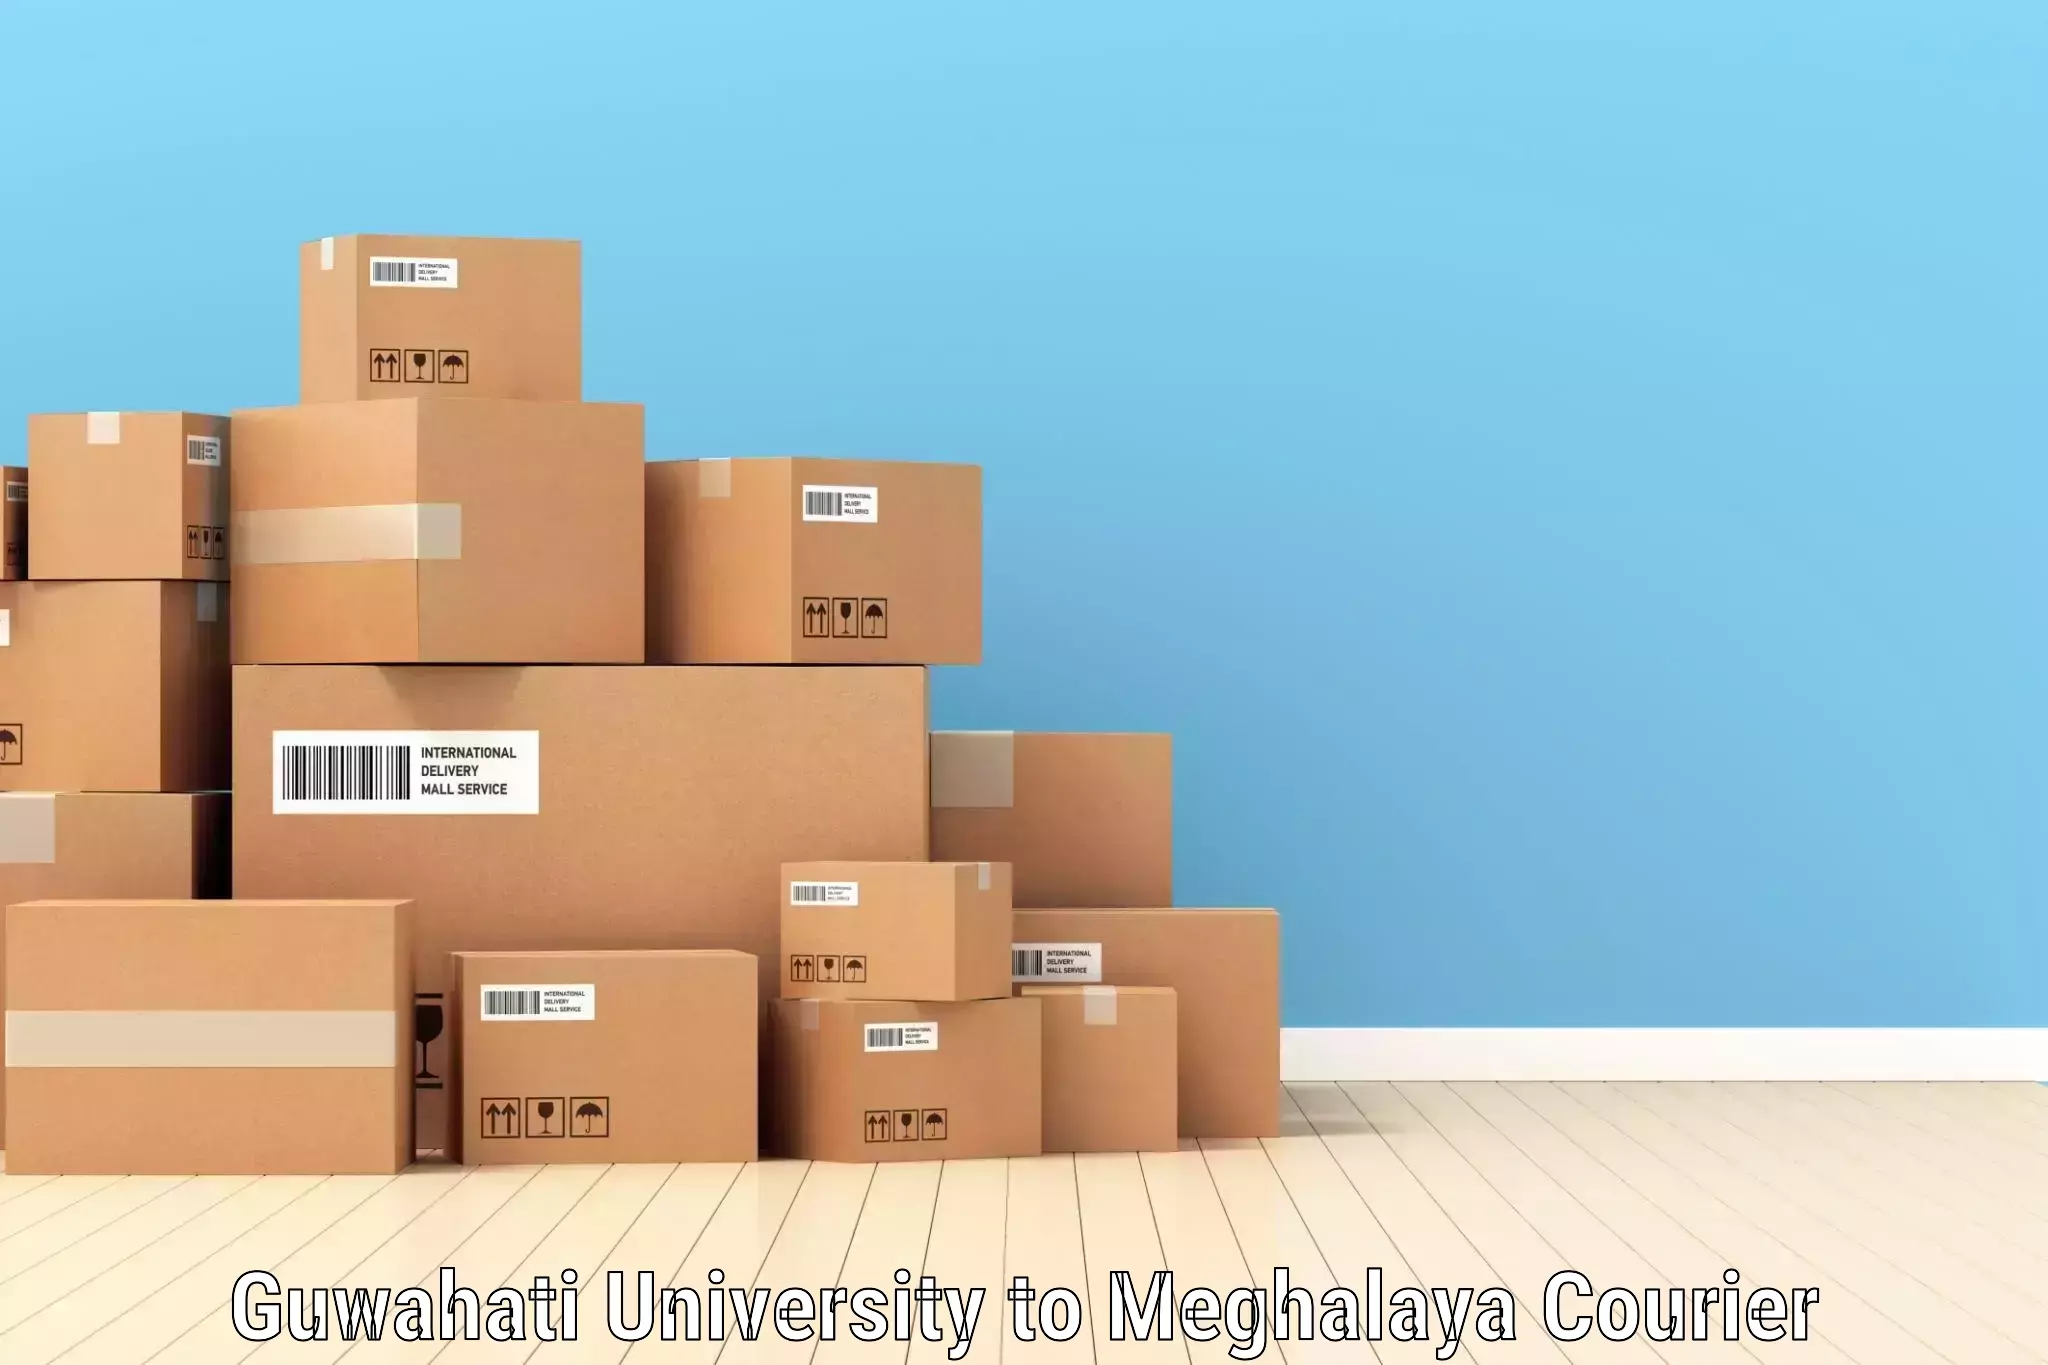 Door-to-door freight service Guwahati University to Meghalaya